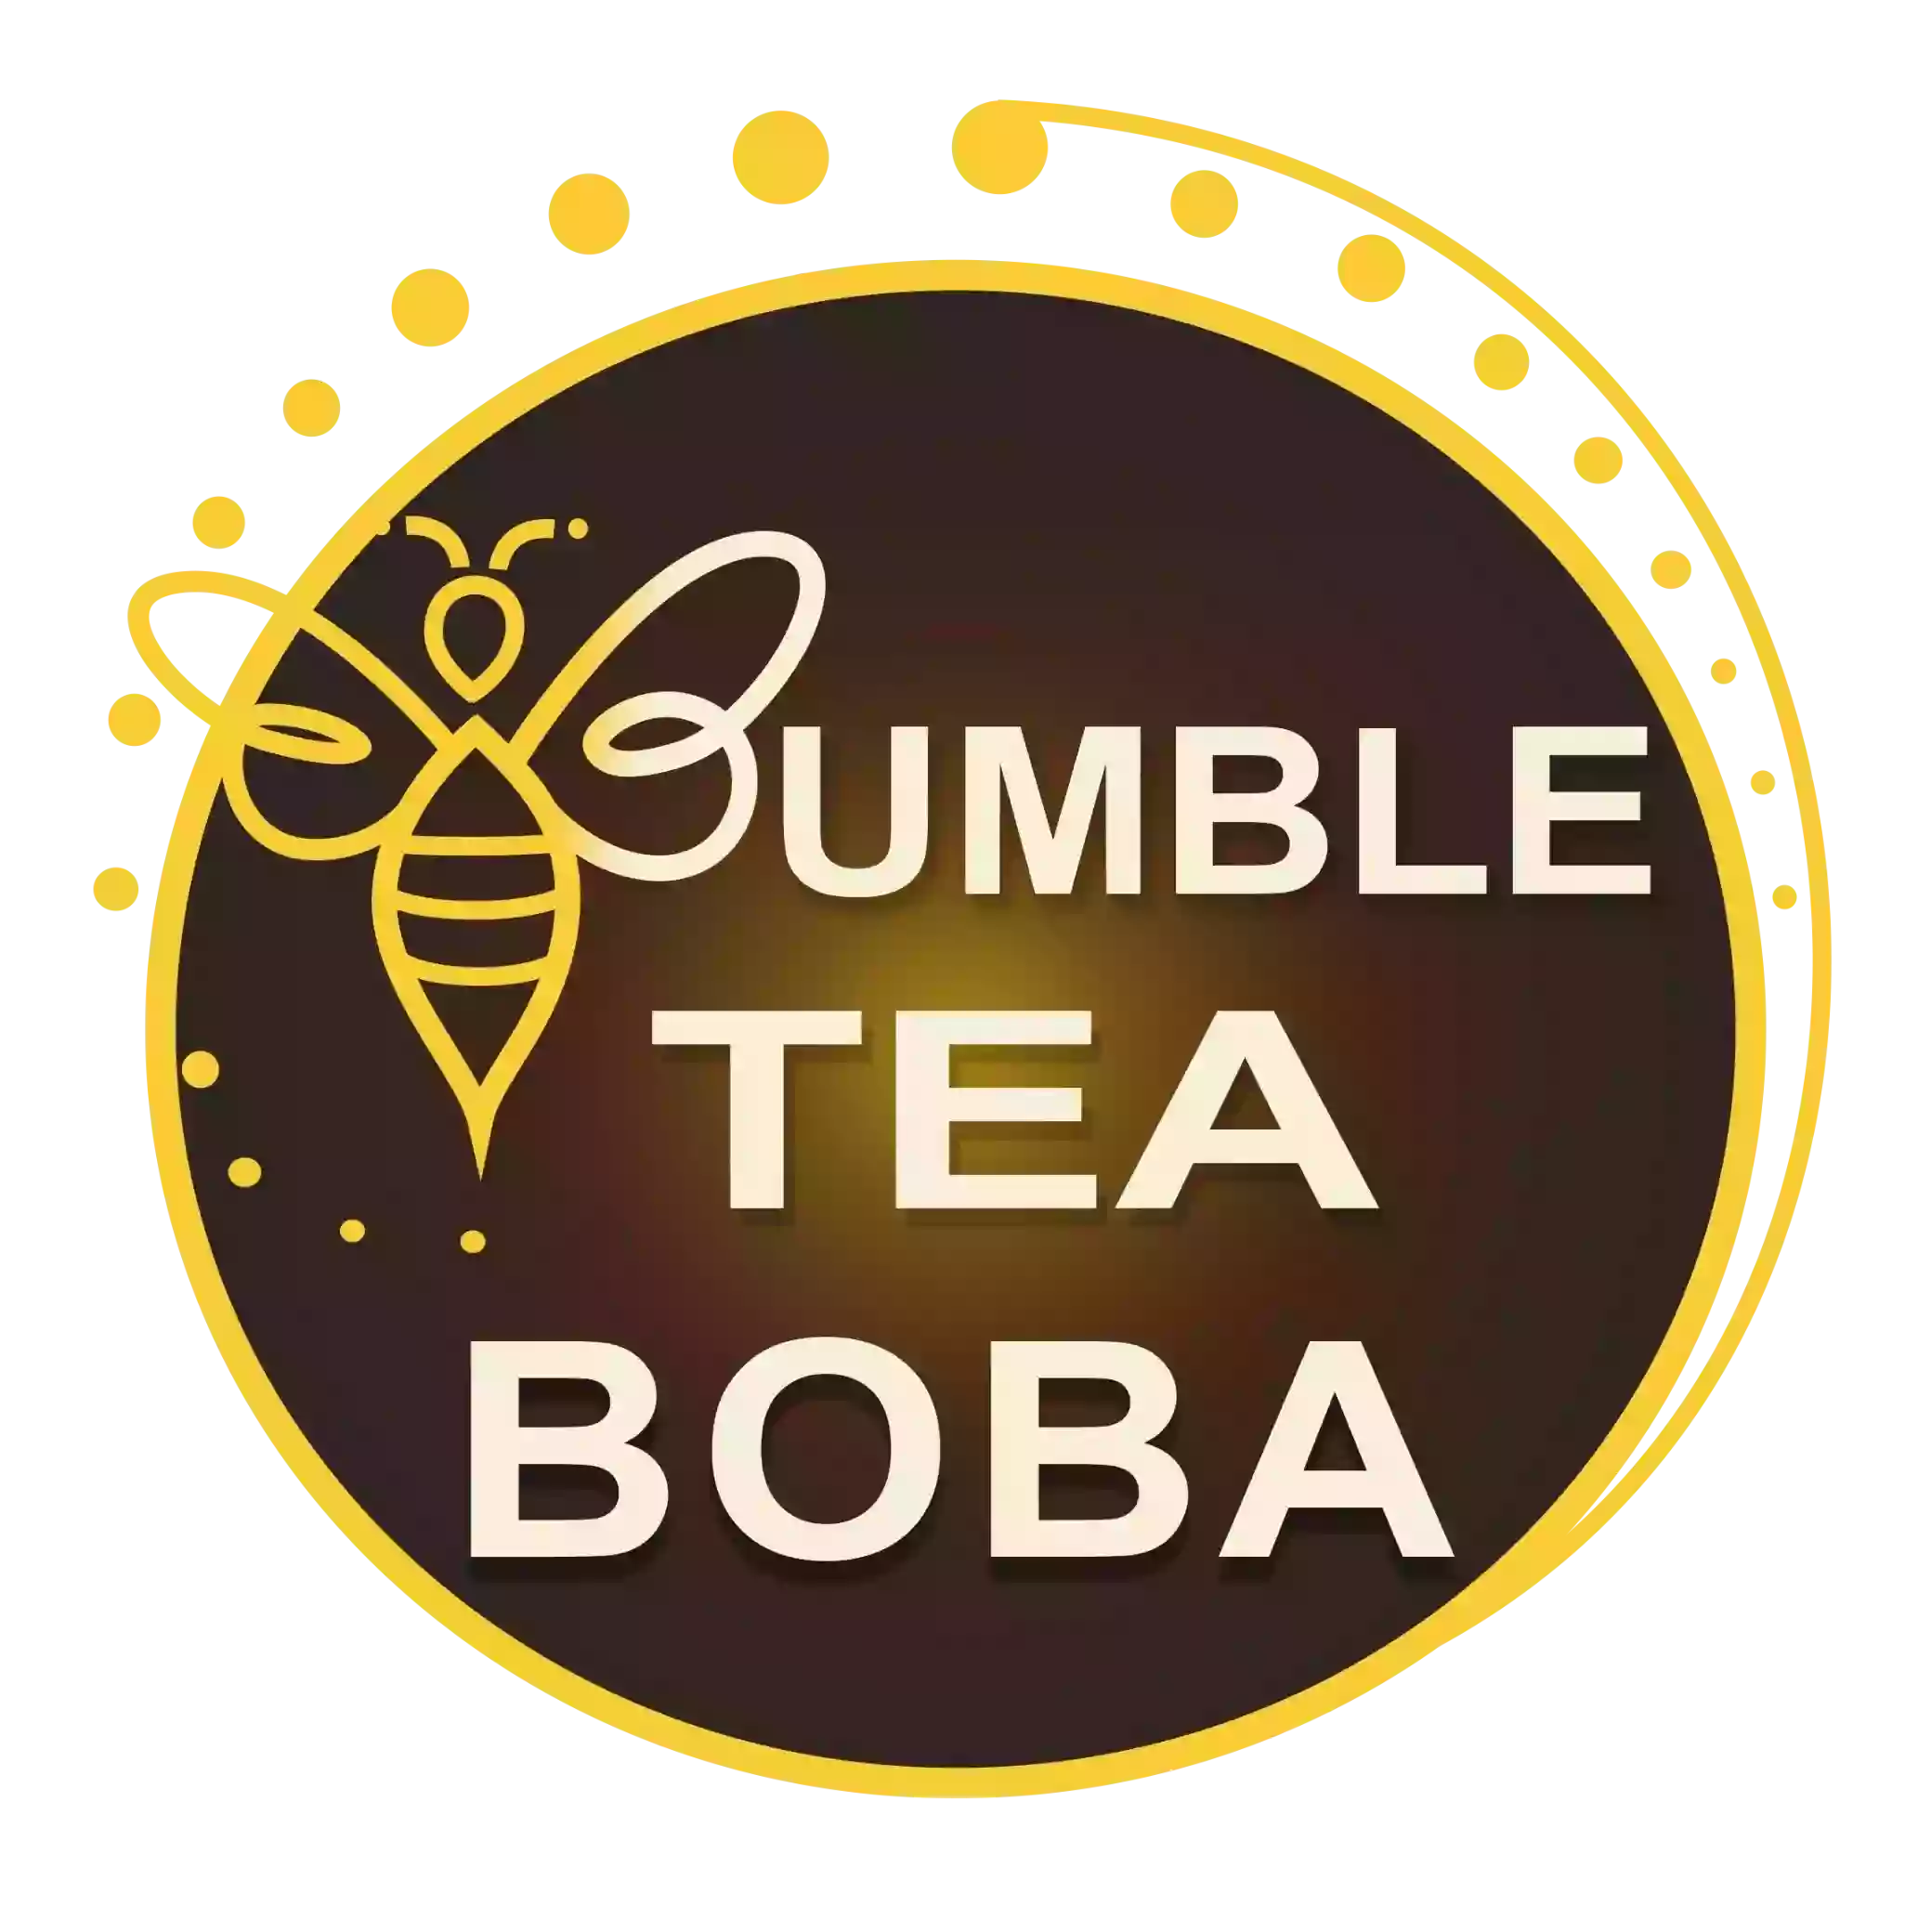 Bumble Tea Boba, Reno Nevada